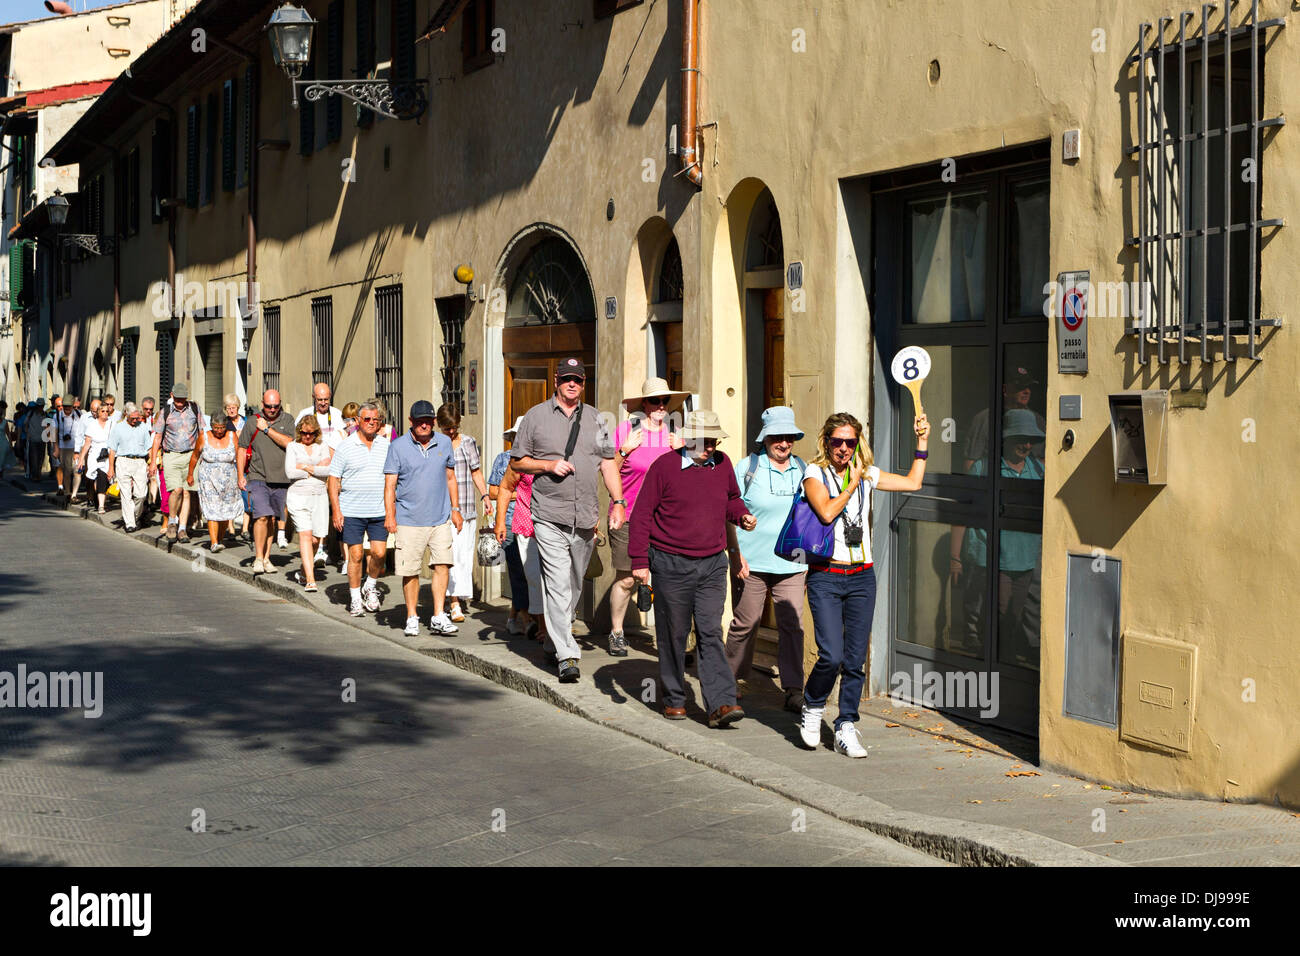 Gruppo turistico con guida femmina tenendo una paletta con il numero 8, Firenze, Italia Foto Stock